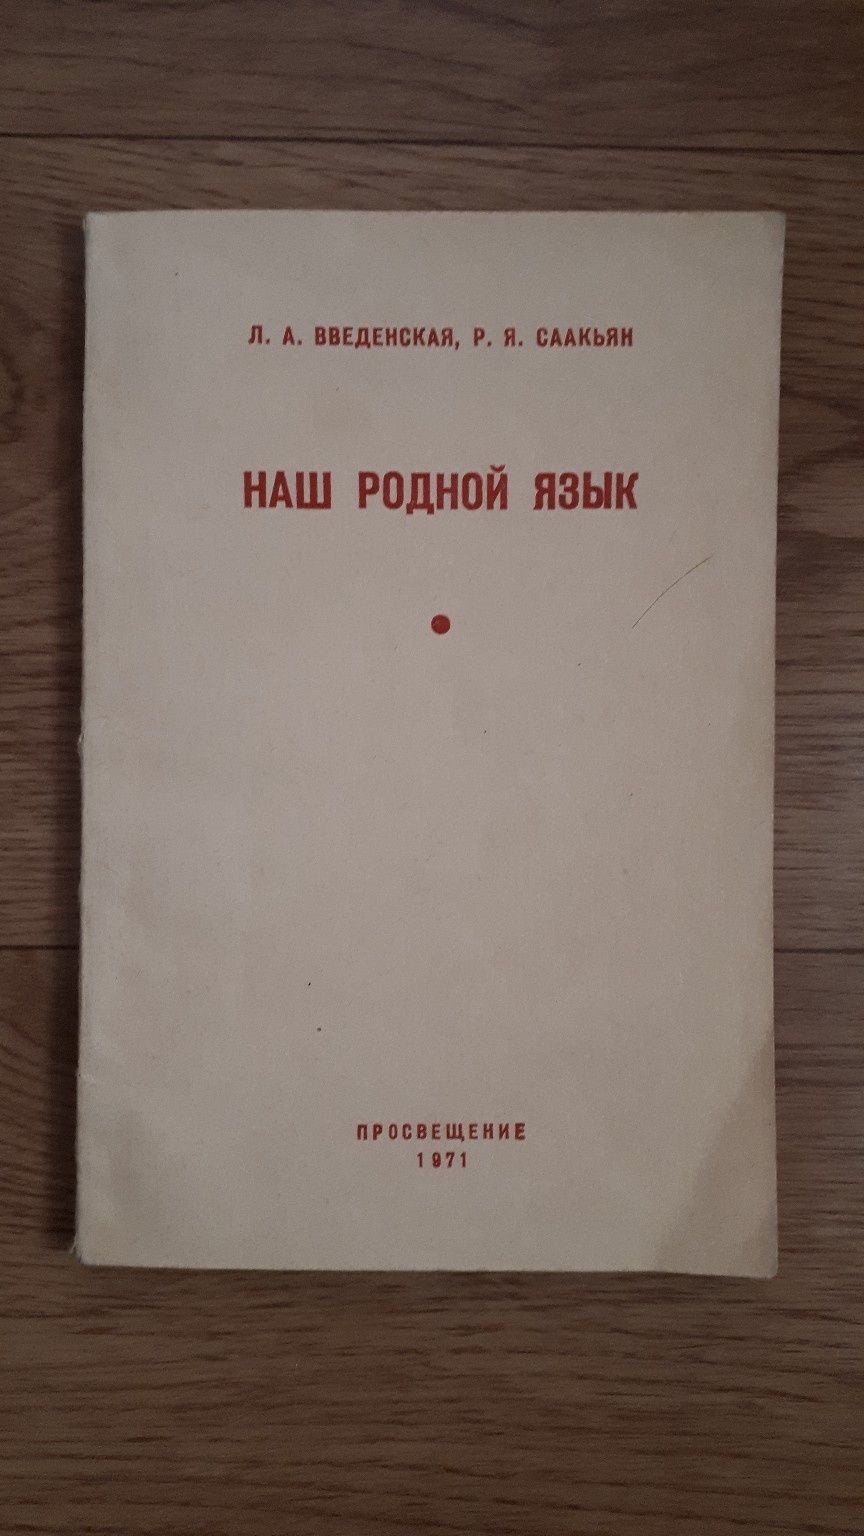 Книги учебники пособия времен СССР